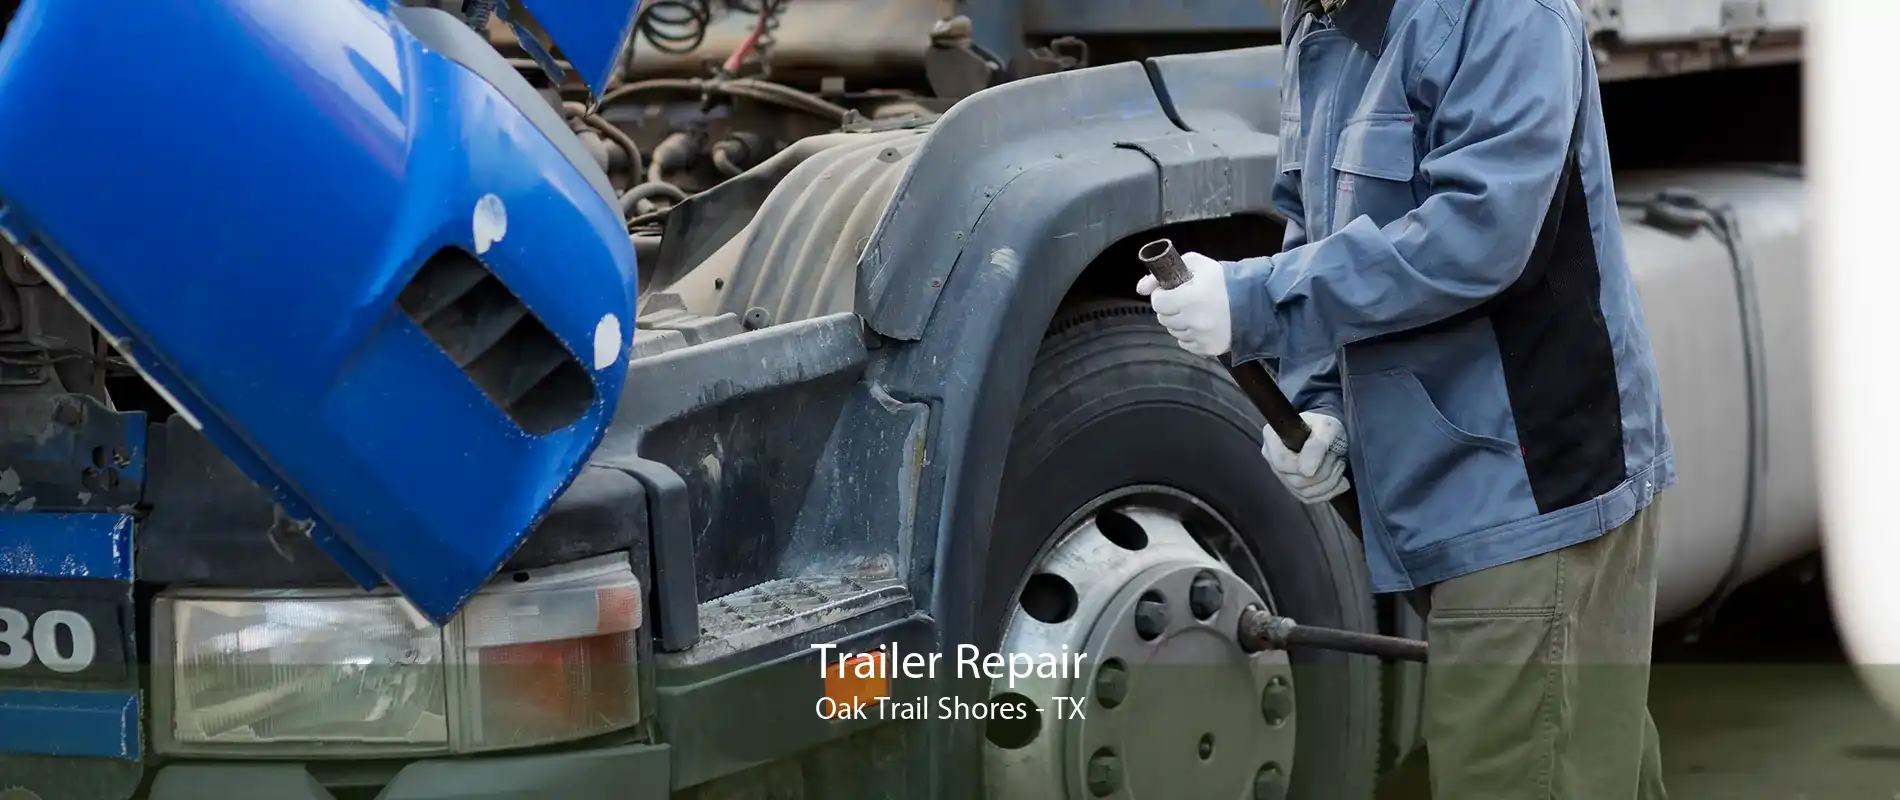 Trailer Repair Oak Trail Shores - TX